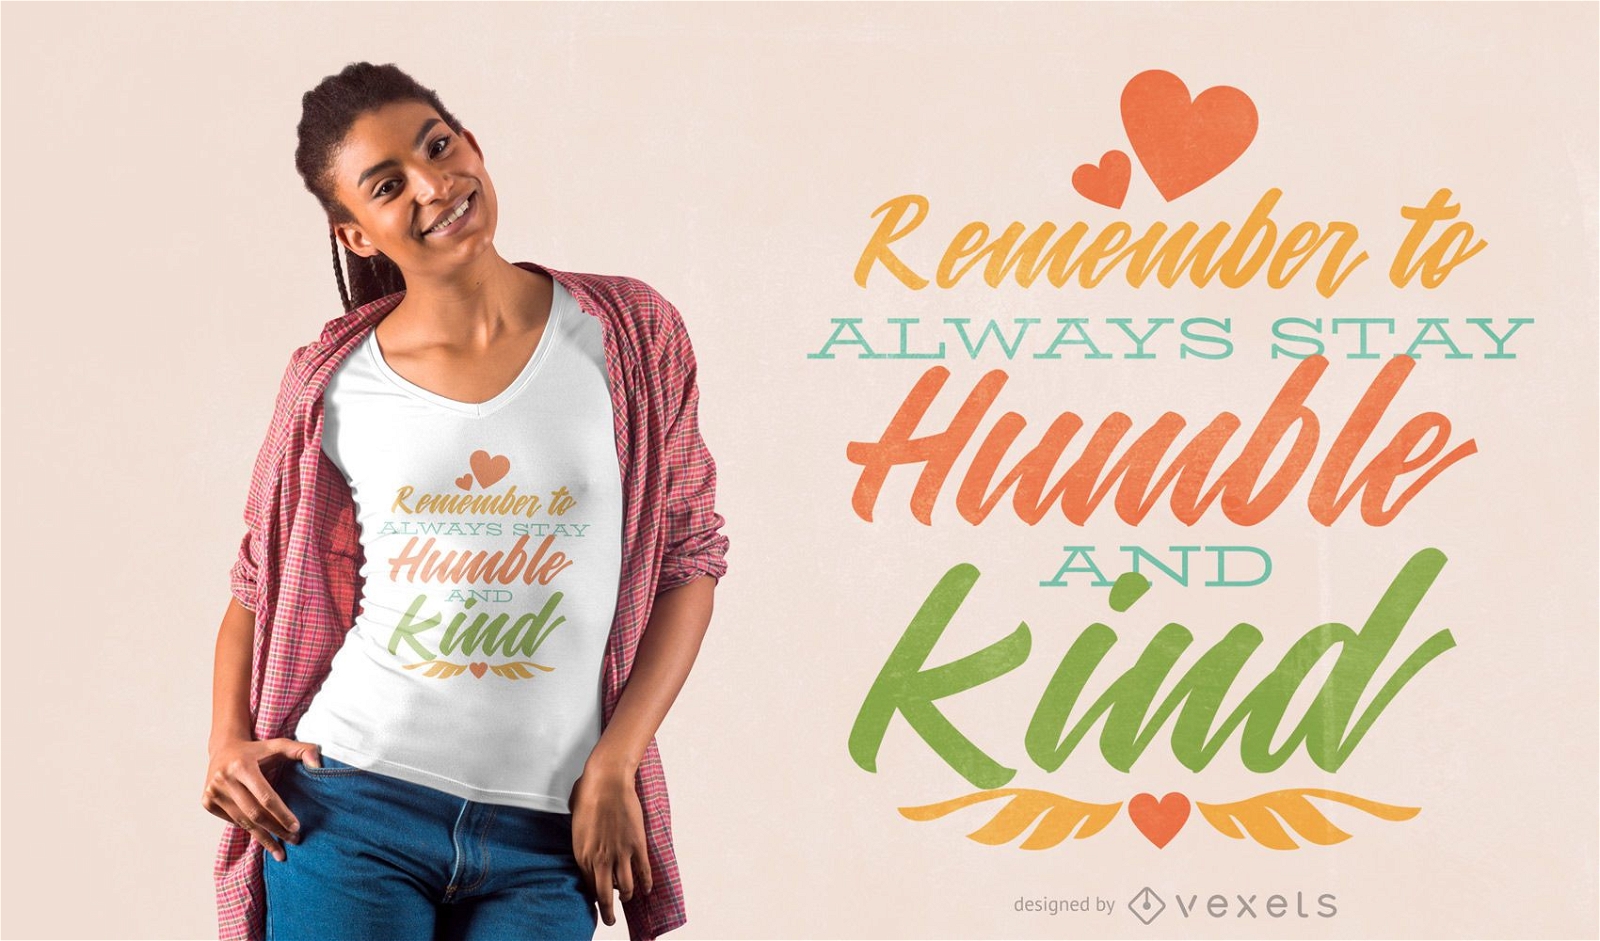 Freundlichkeit Zitat T-Shirt Design